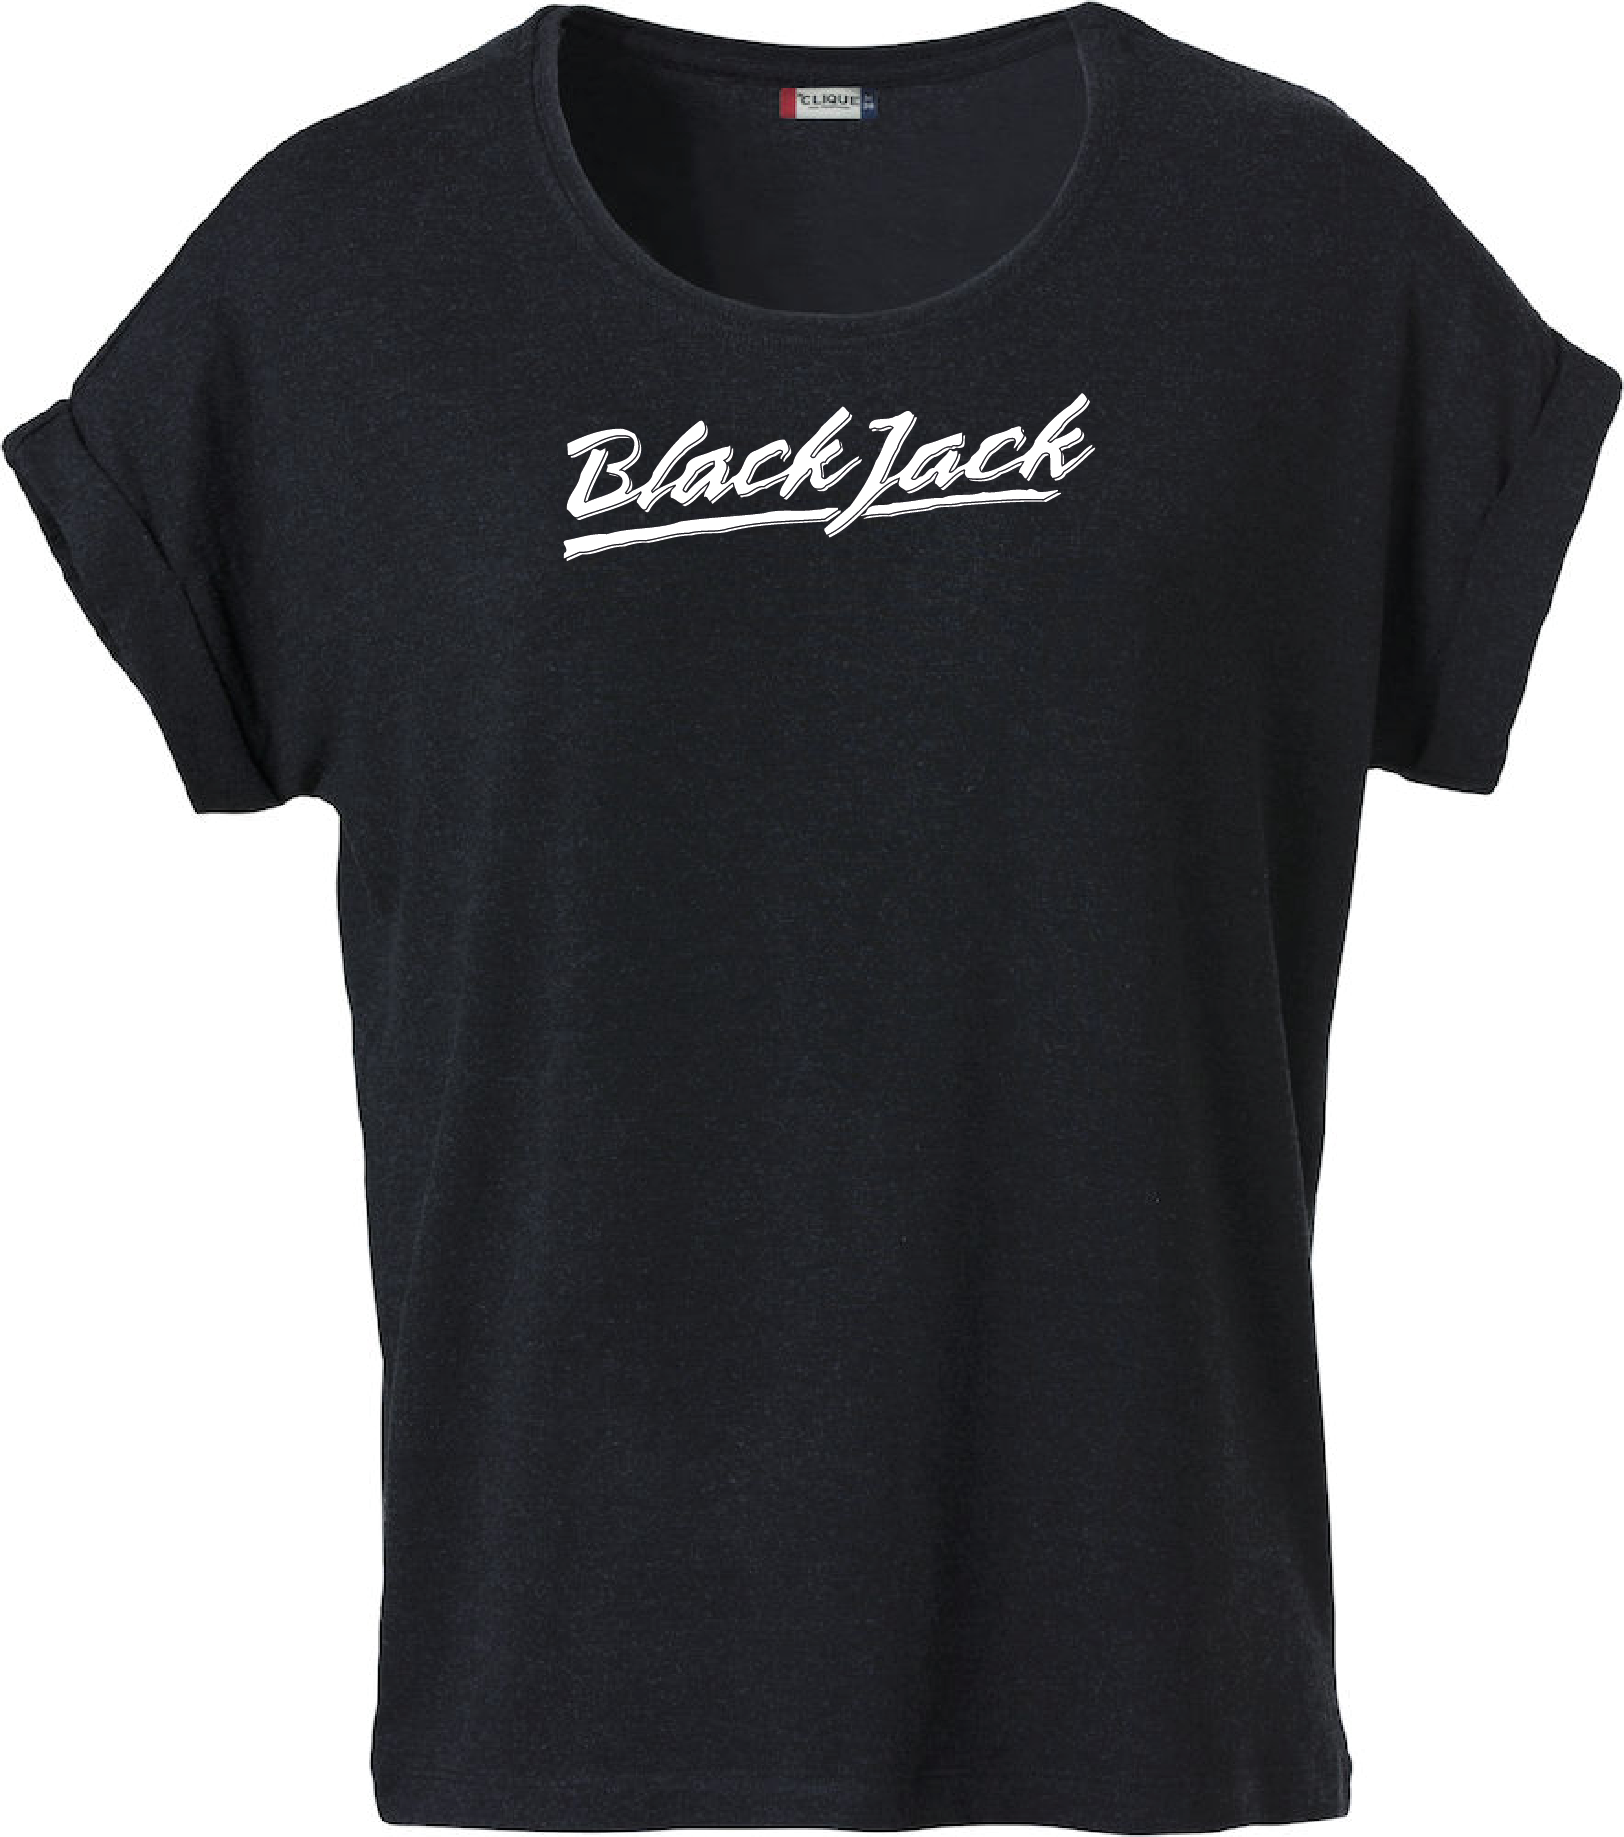 Svart Dam T-shirt Katy "Black Jack"